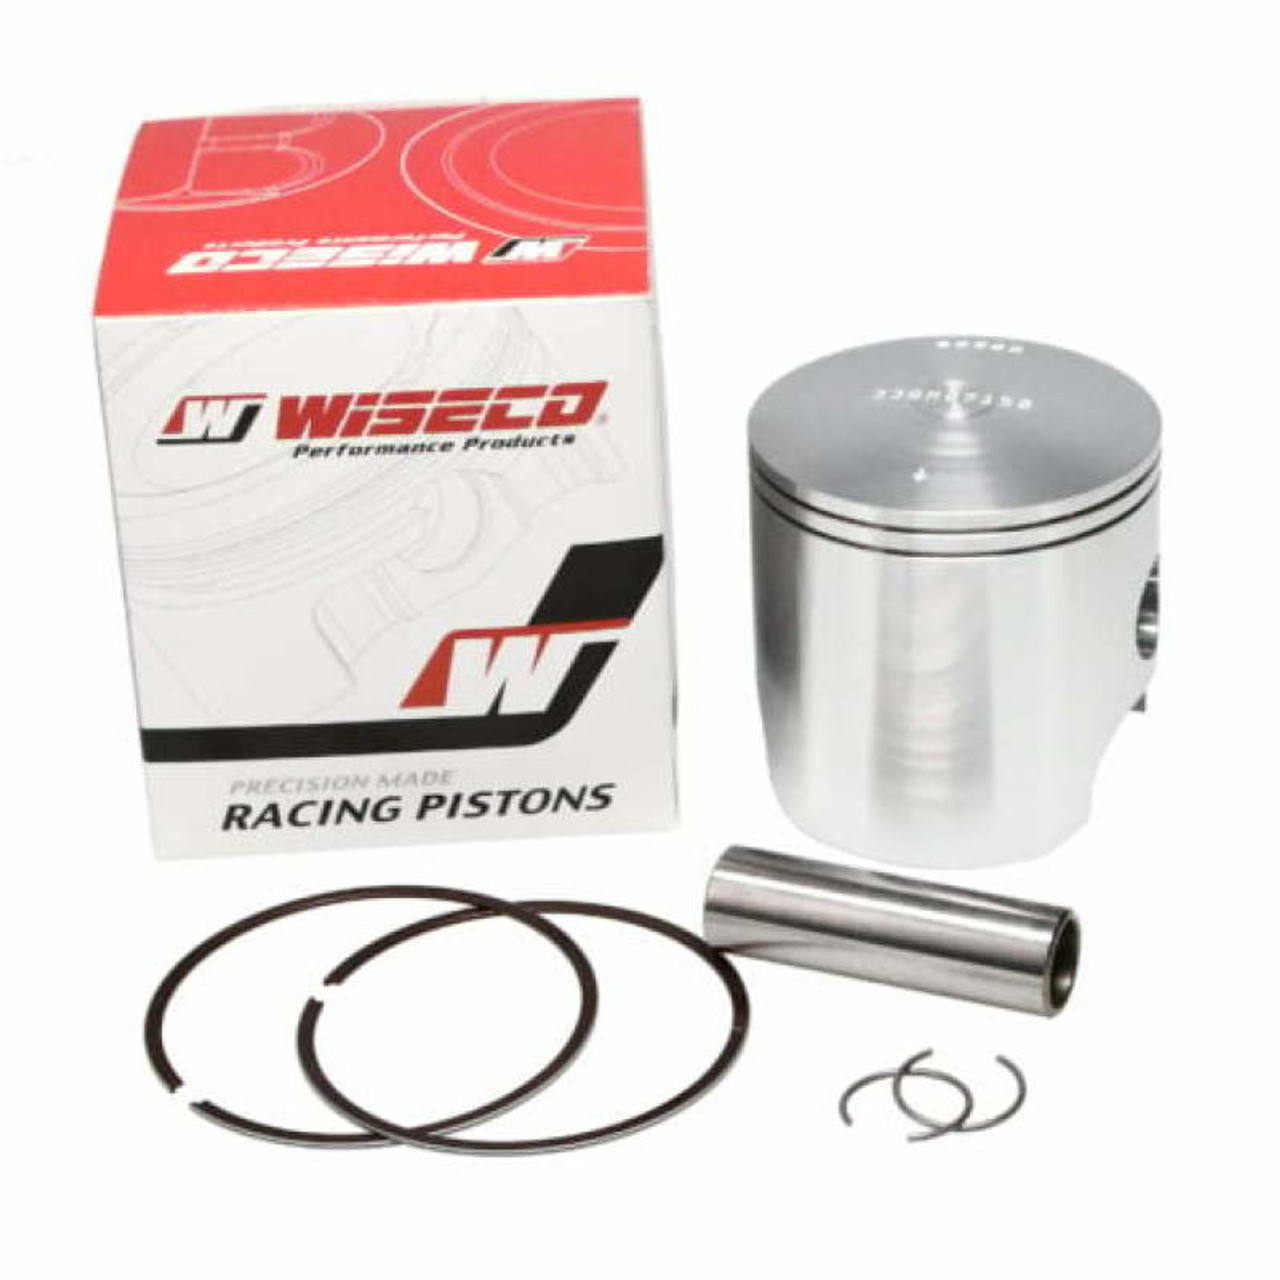 Wiseco 04-07 Honda CR125R Racers Elite 2244CS Piston - RE922M05700 Photo - Primary